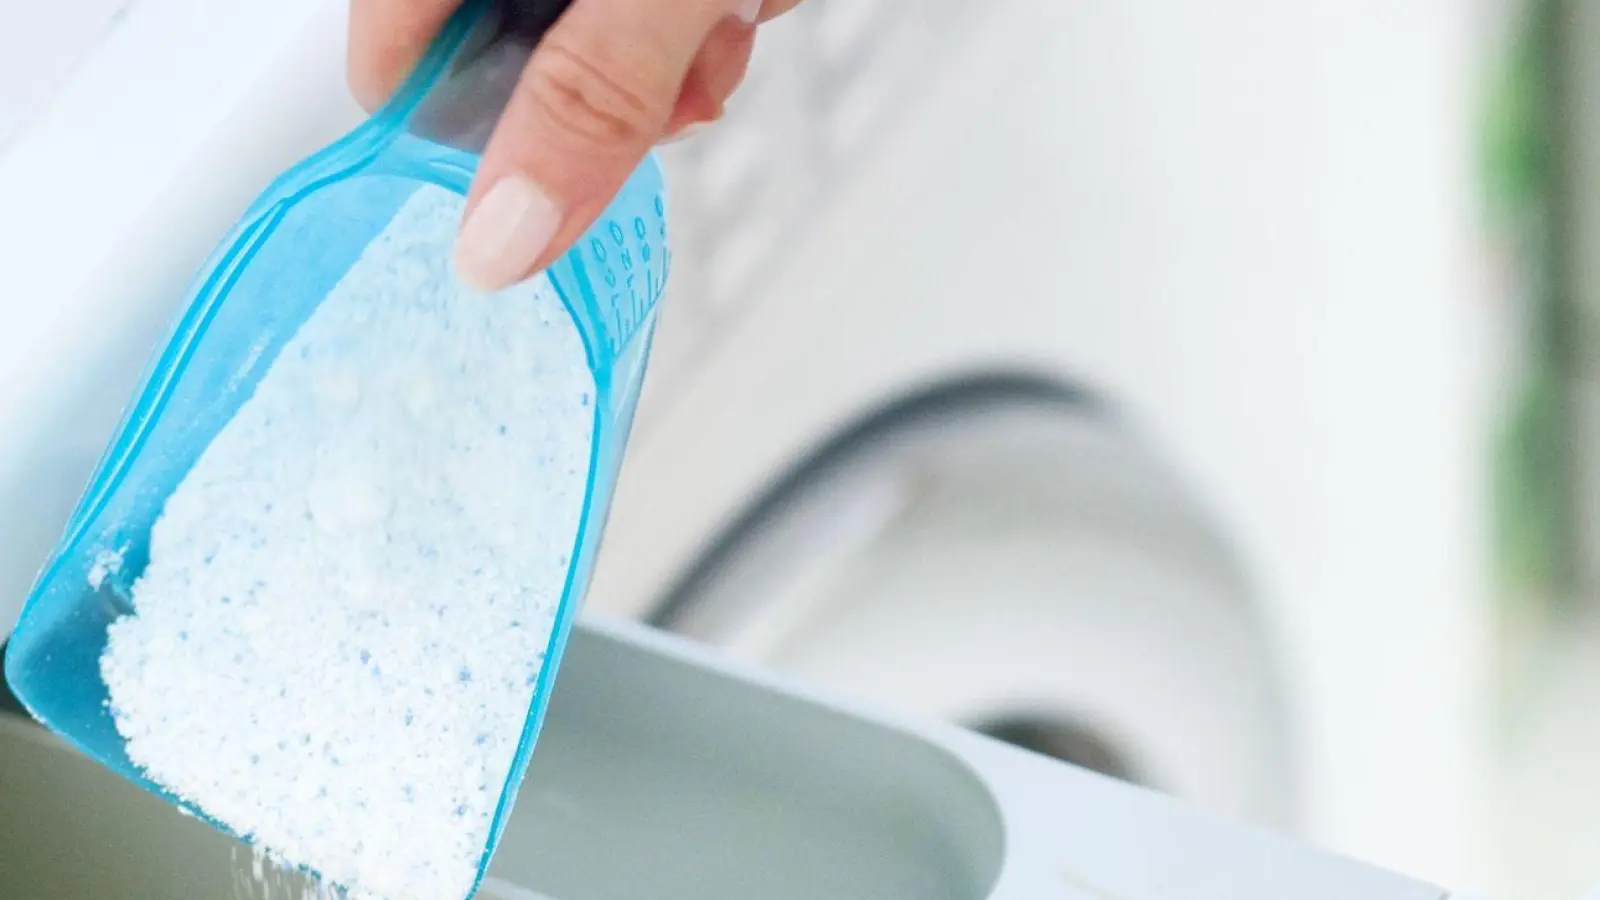 Waschmittel richtig dosieren ist mit einem Universal-Messbecher mit Millimeterangabe einfacher und präziser. (Foto: Christin Klose/dpa-tmn)